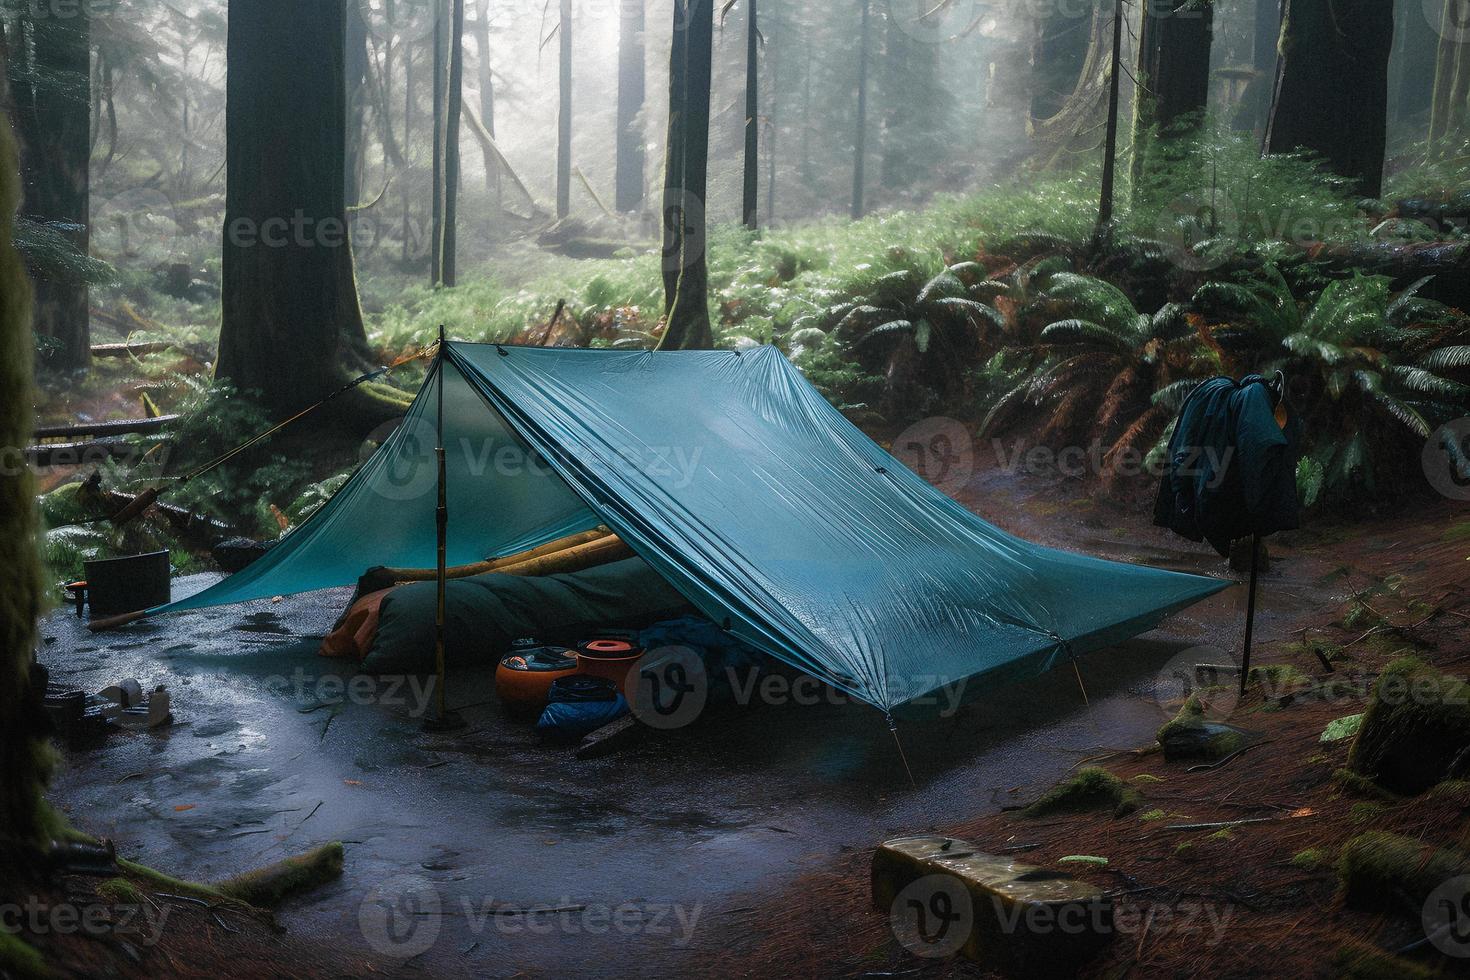 Kro stempel lige ud vildmark överlevnad. bushcraft tält under de presenning i tung regn,  fattande de kyla av gryning. en scen av uthållighet och elasticitet  22210449 Arkivfoto på Vecteezy